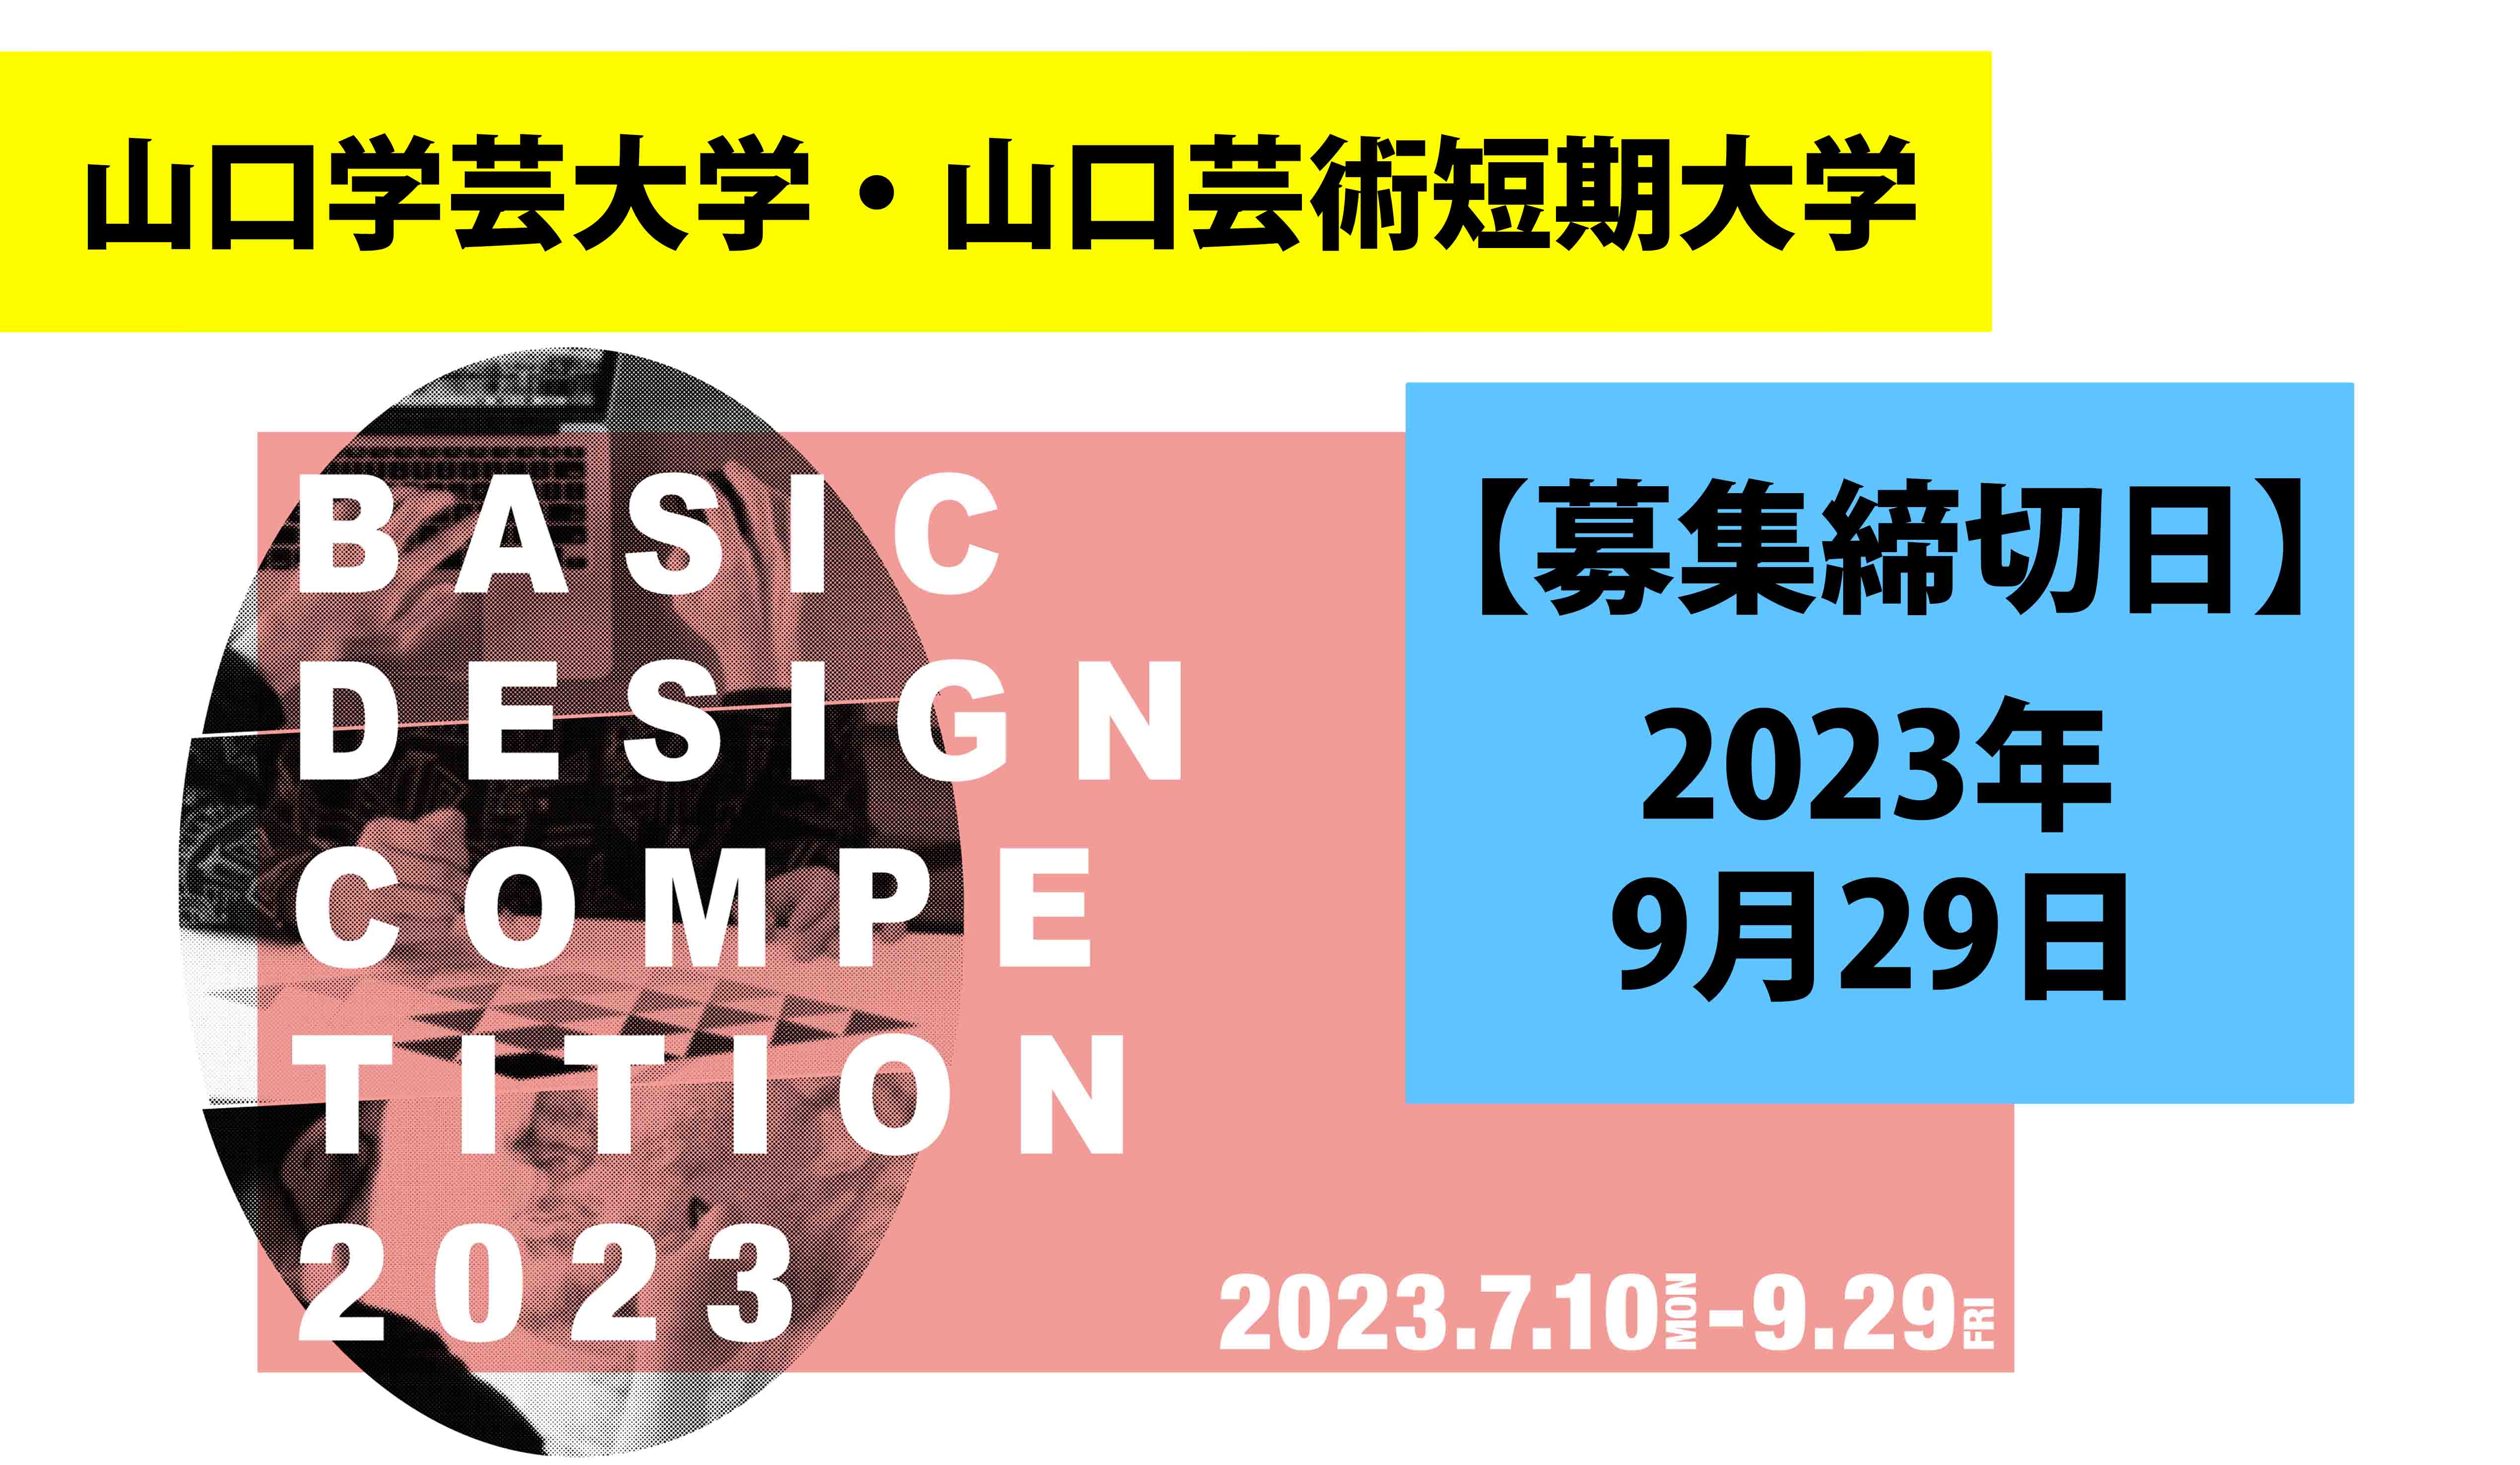 デザインコンペ2023：BASIC DESIGN COMPETITION 2023 